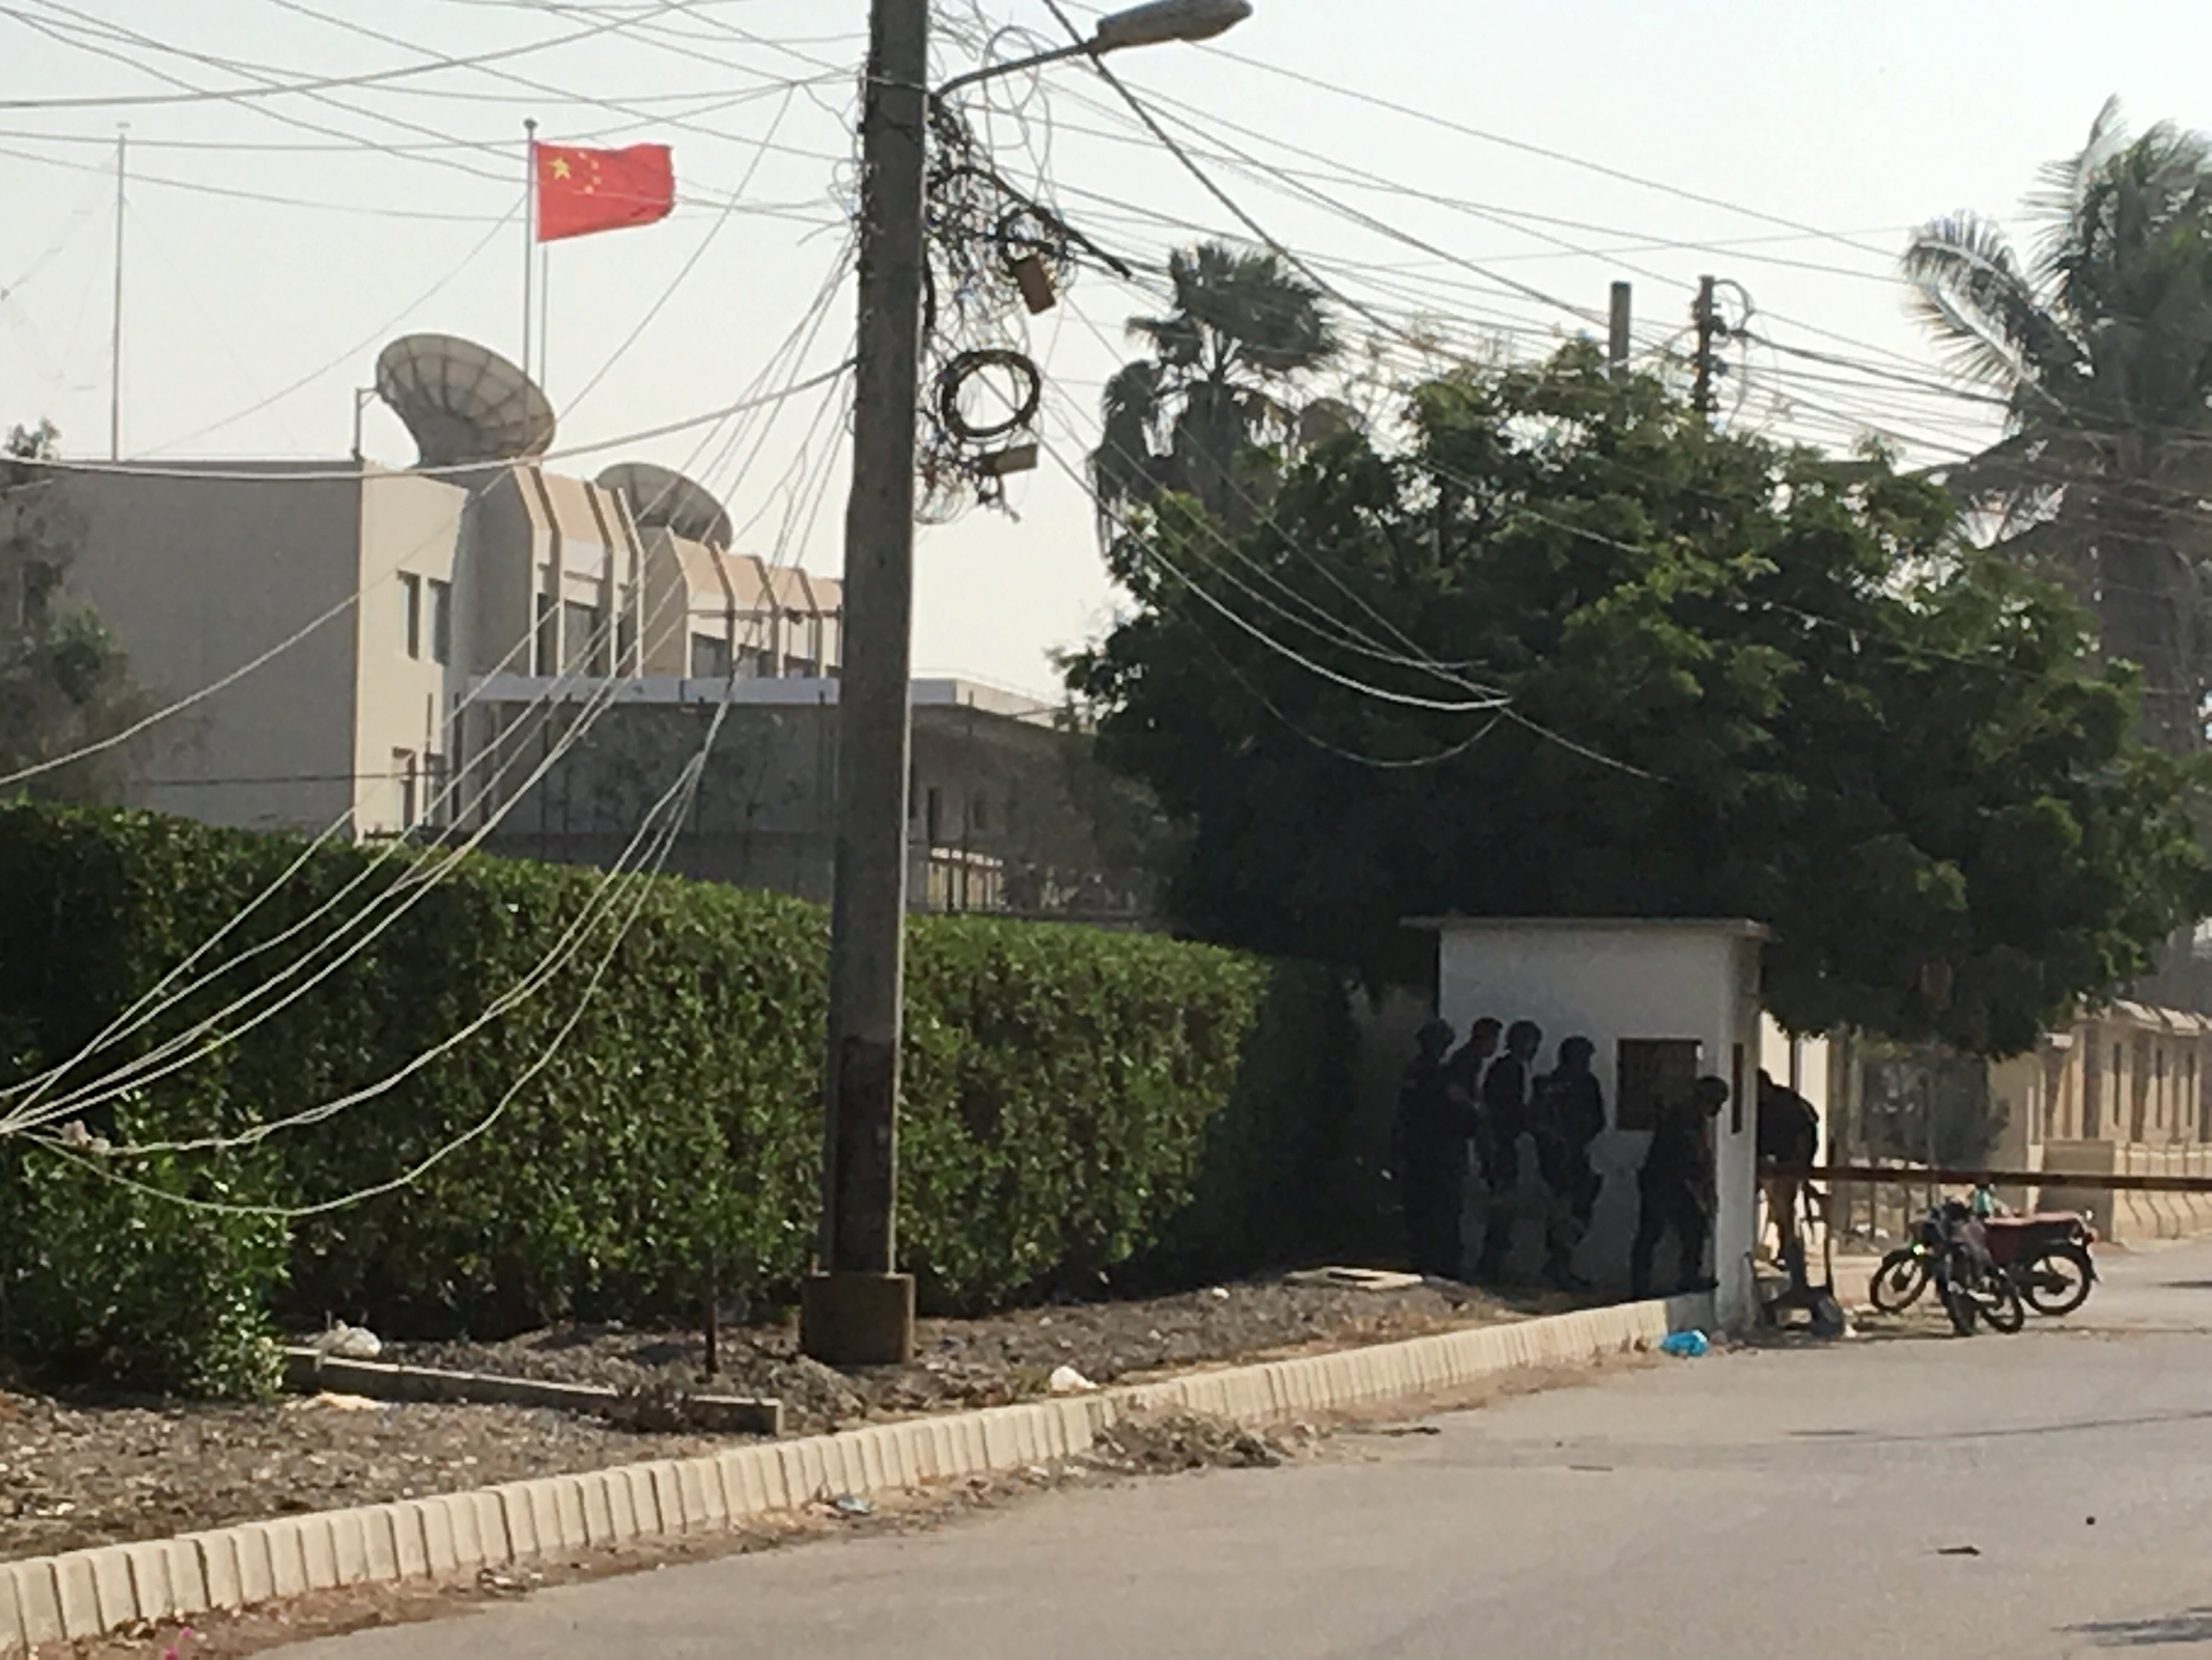 Chinese consulate in Karachi, Pakistan